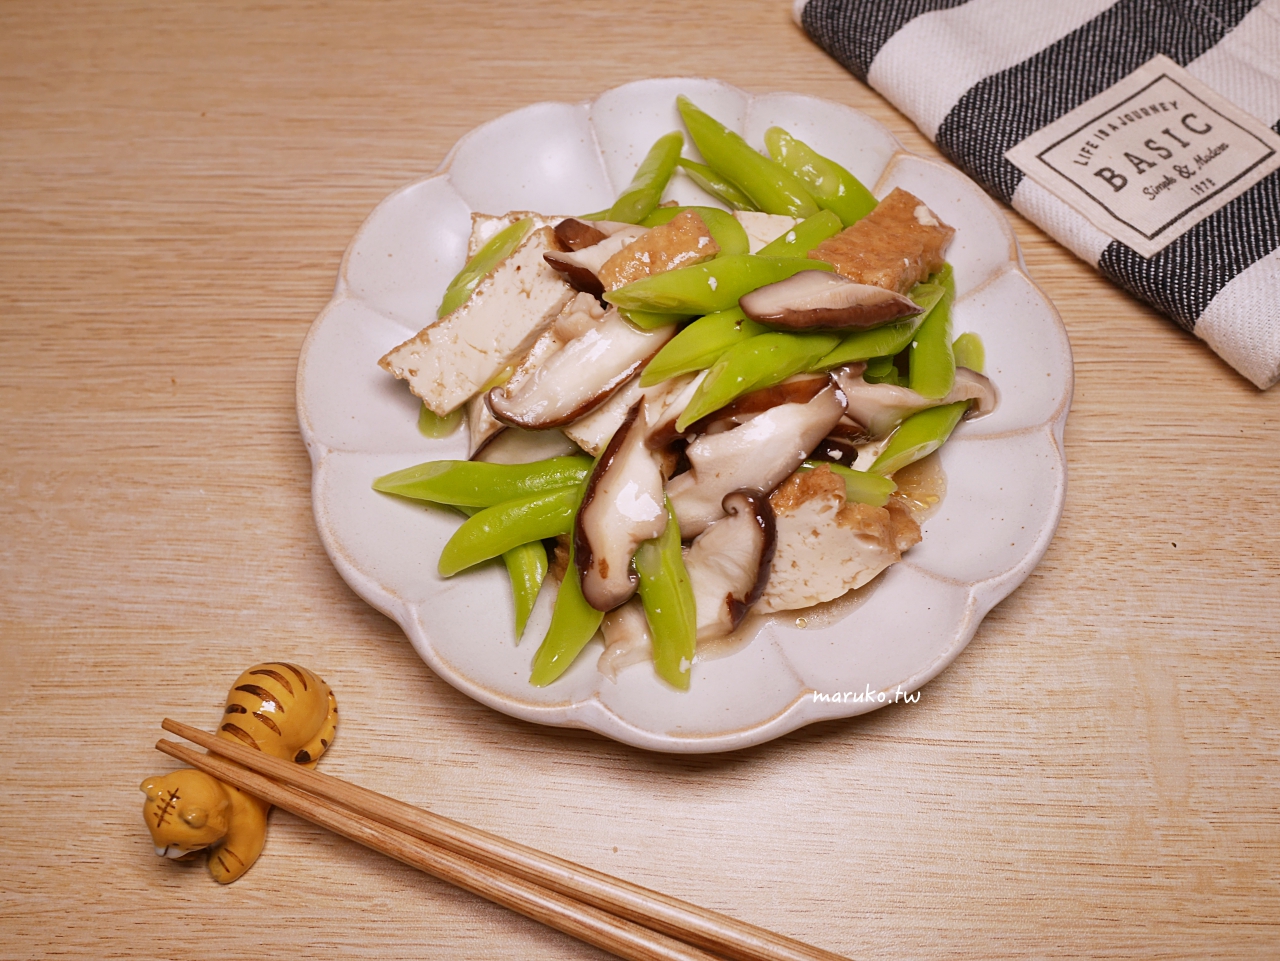 【食譜】油豆腐拌時蔬 5分鐘開飯 只要煮熟就能上桌 中華黃金豆腐推薦 @Maruko與美食有個約會